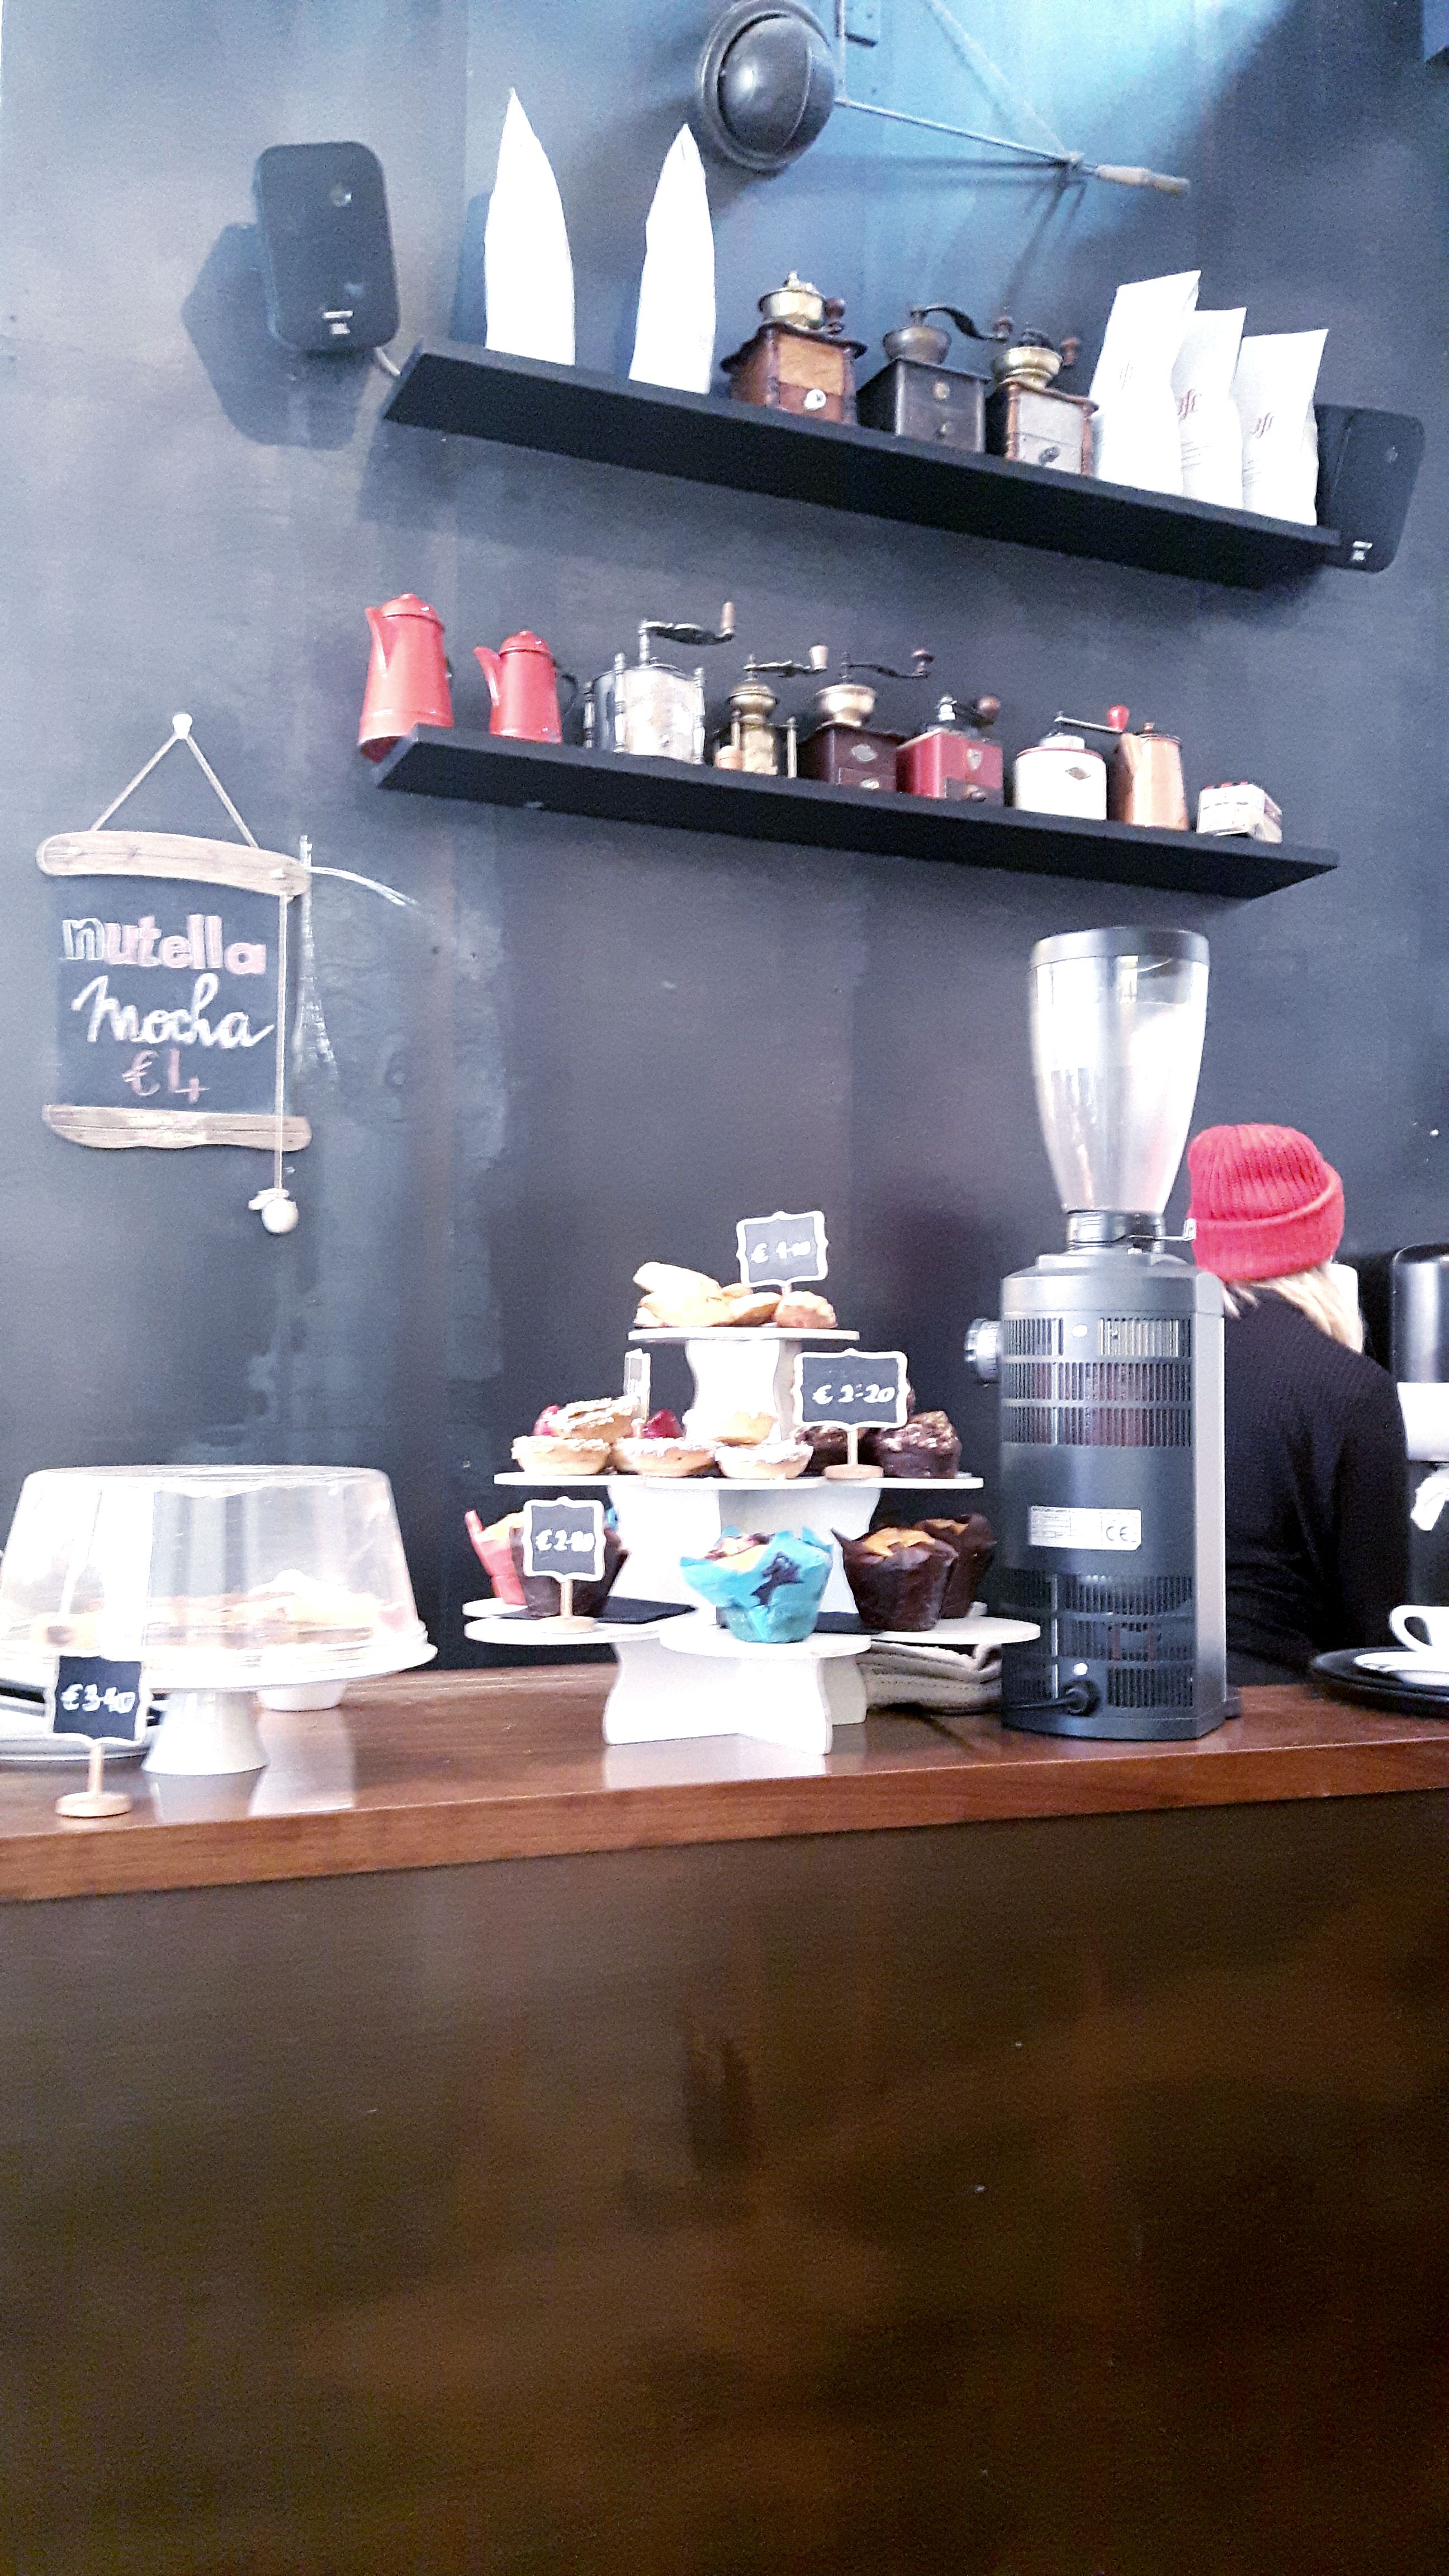 Cafes to study dublin